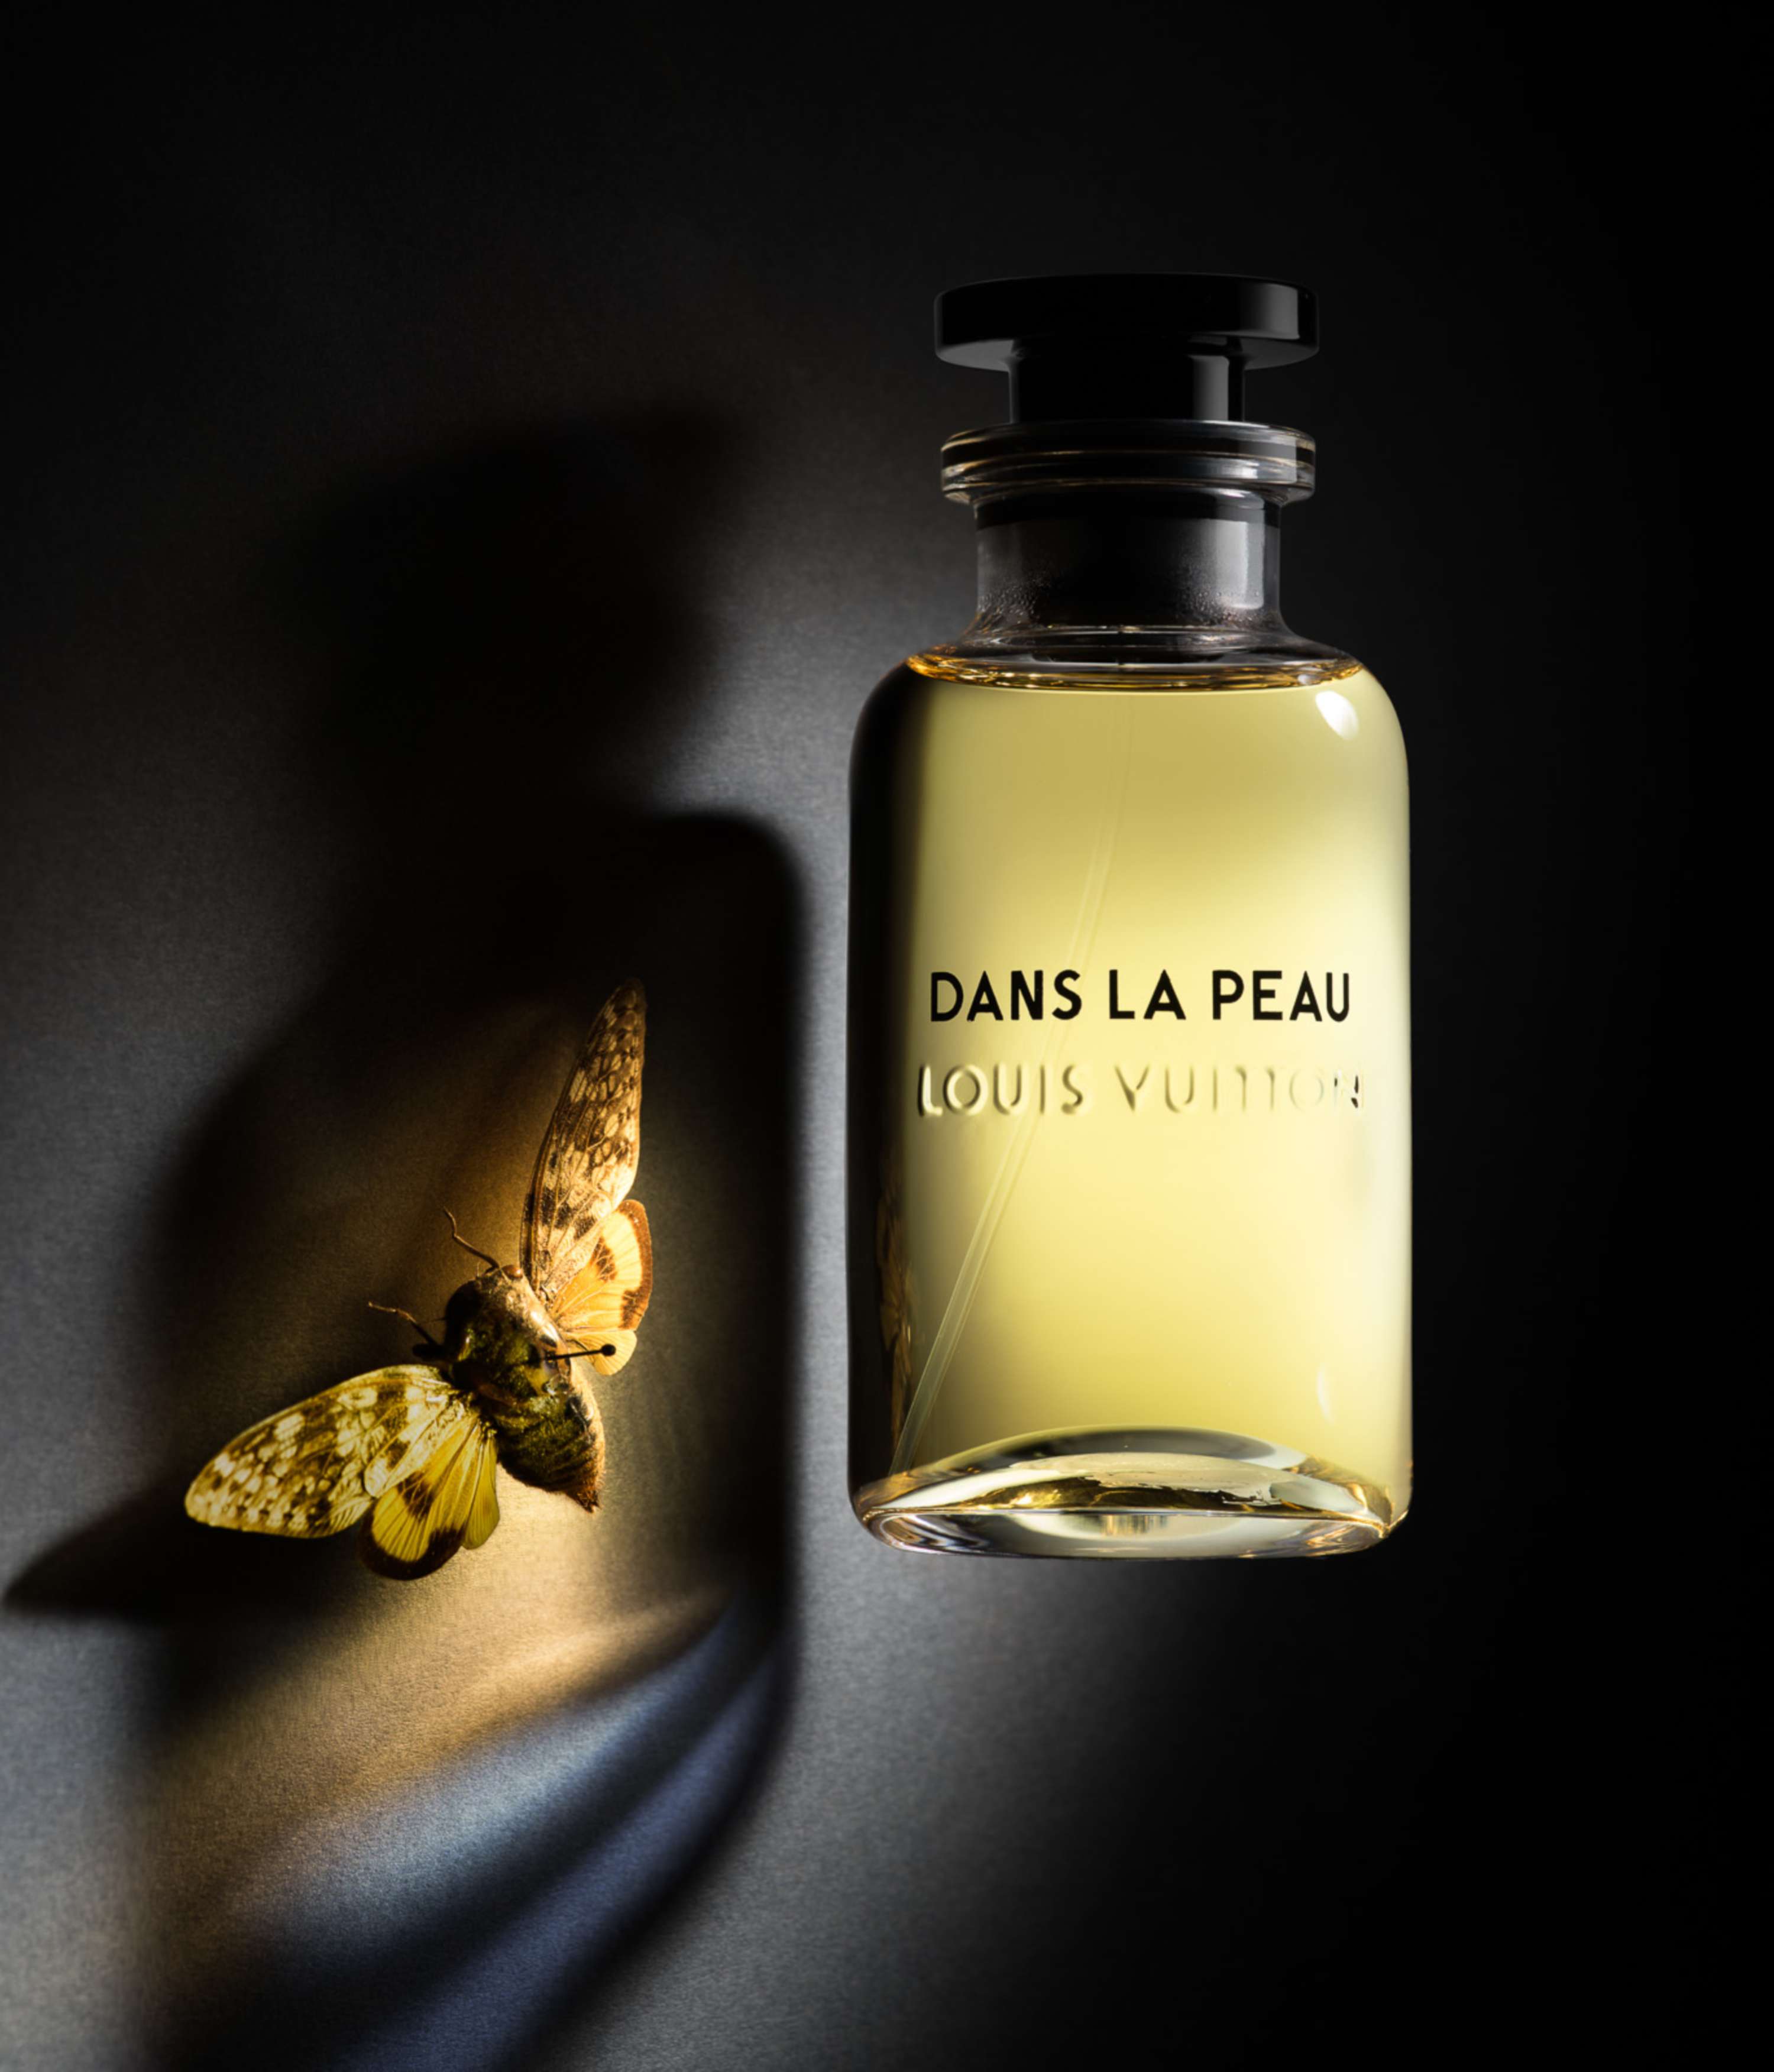 Louis Vuitton launches new fragrance – Étoile Filante - The Glass Magazine